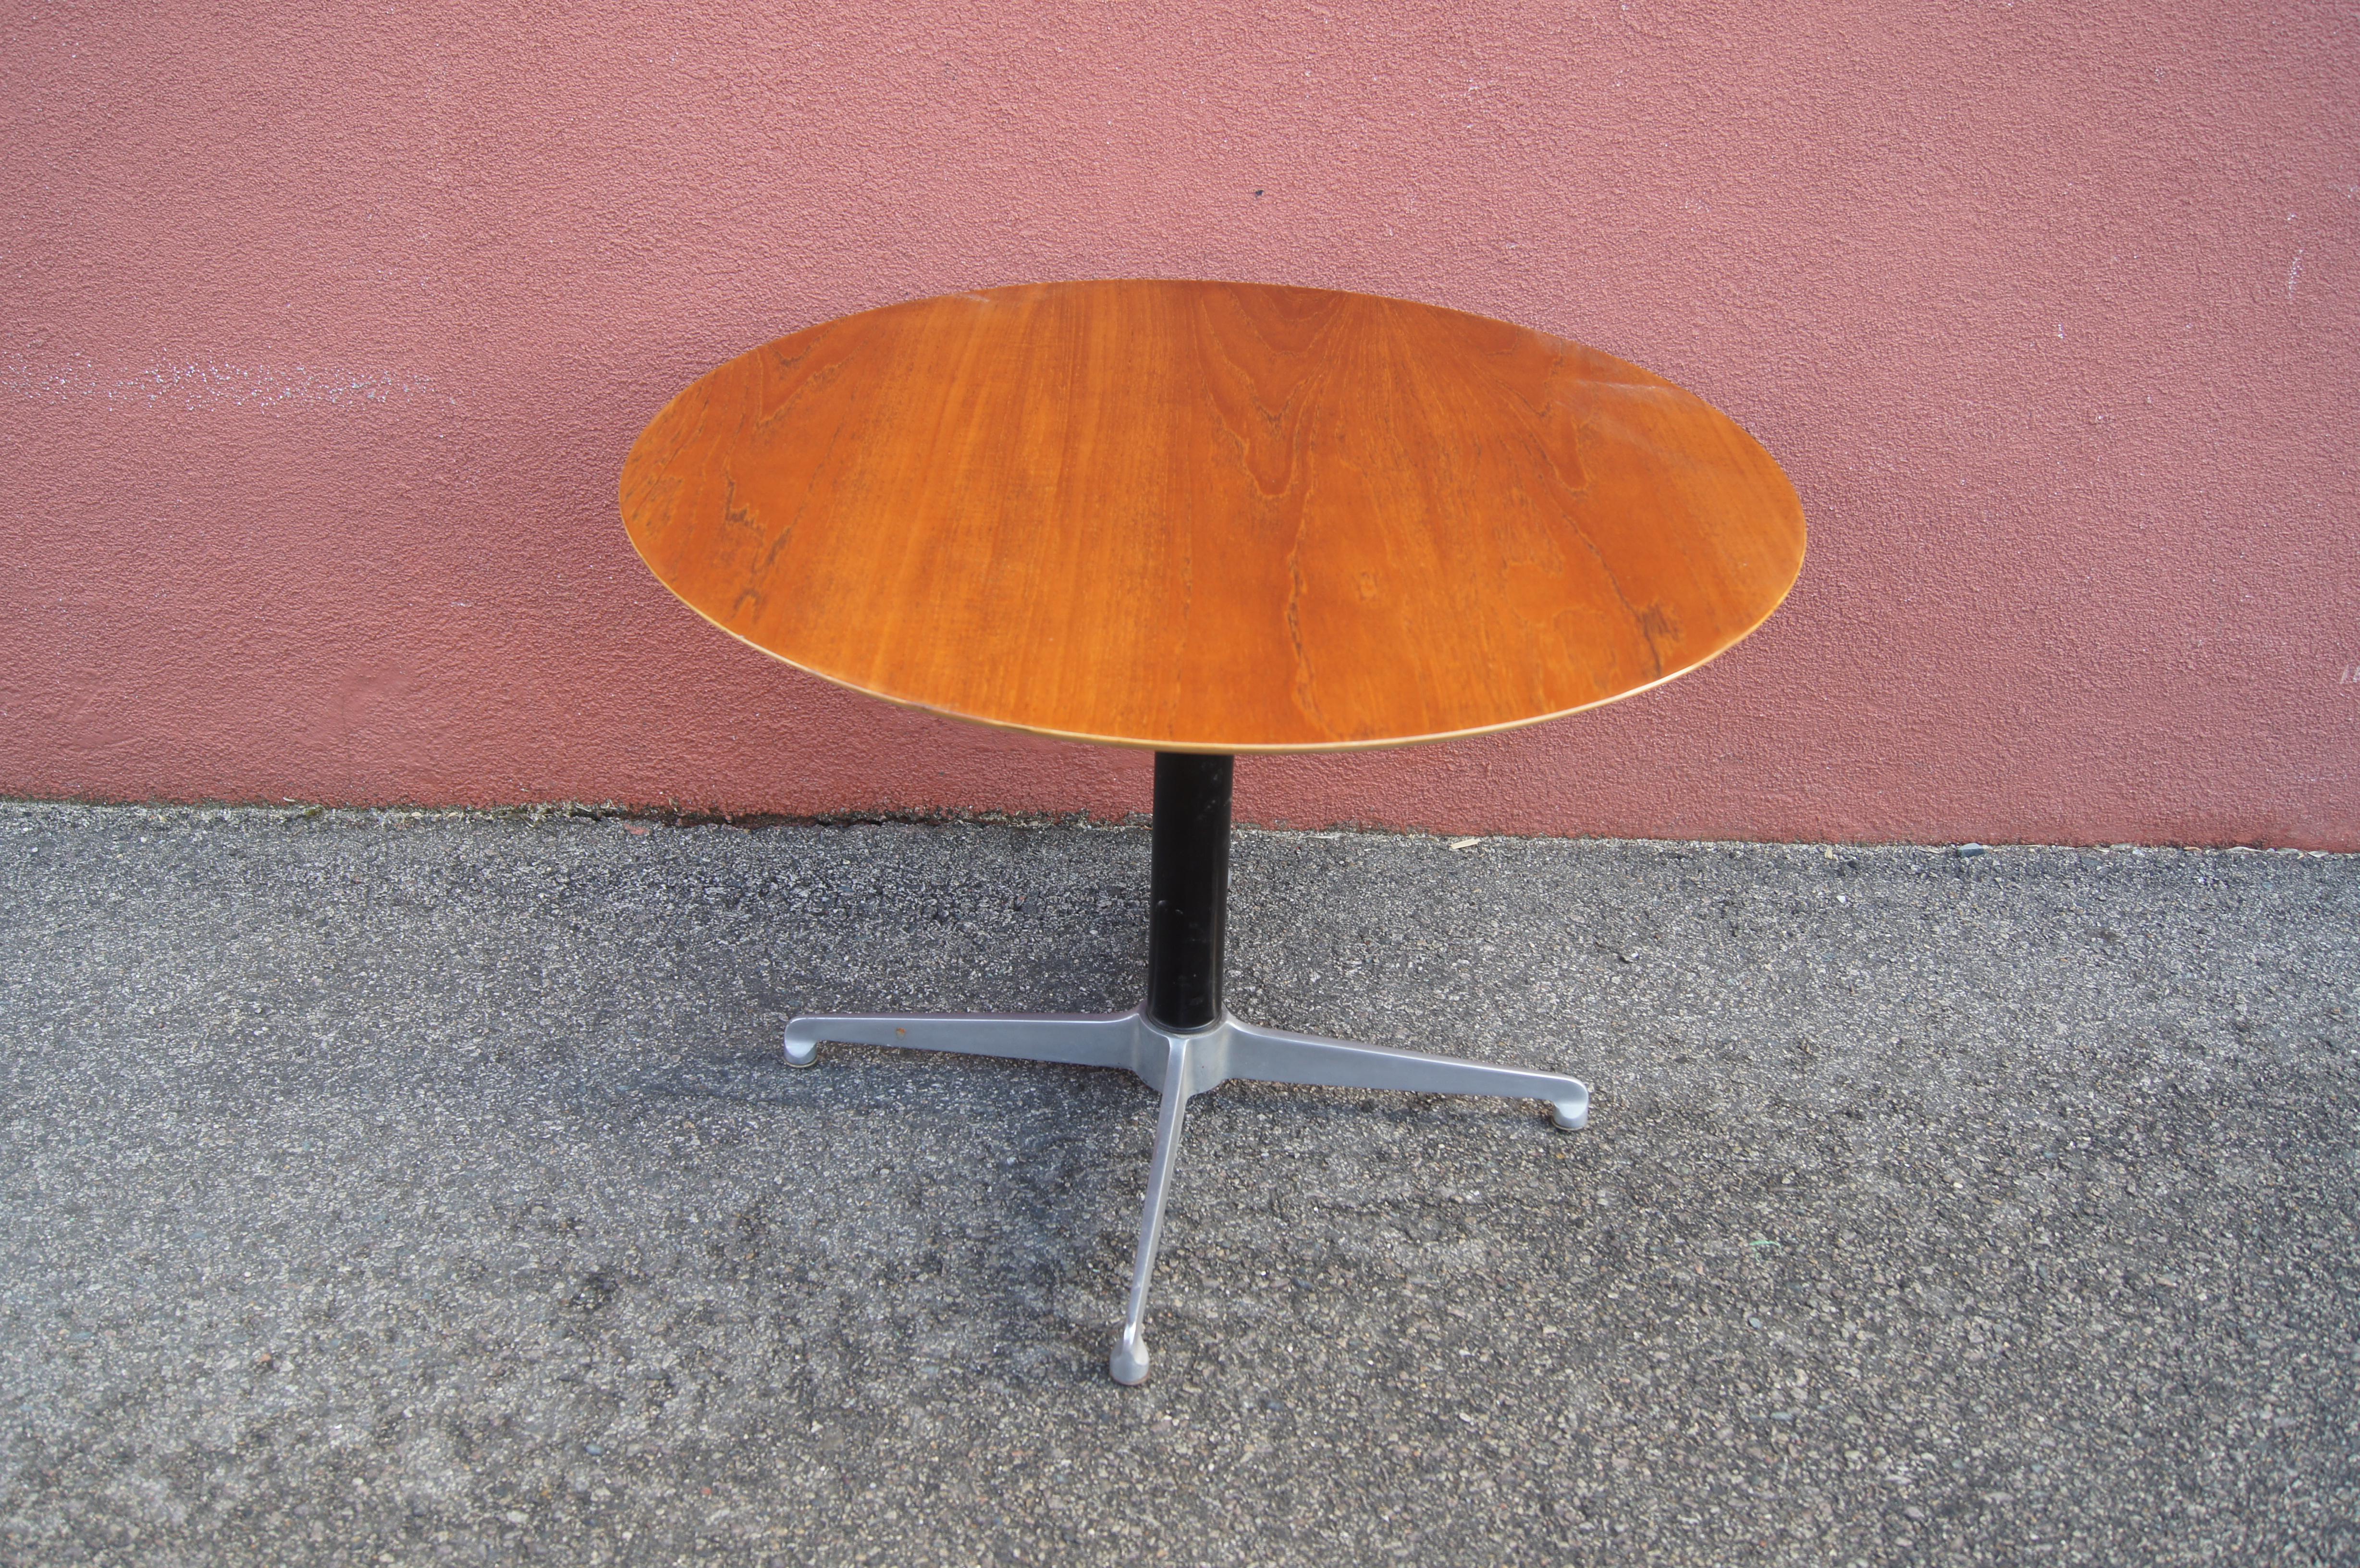 Dieser dänische Tisch hat eine runde Teakholzplatte auf einem Vier-Sterne-Sockel. Die Höhe lässt sich leicht von 16,25 bis 26,5 Zoll verstellen, so dass er als kleiner Couchtisch oder als Beistelltisch verwendet werden kann.